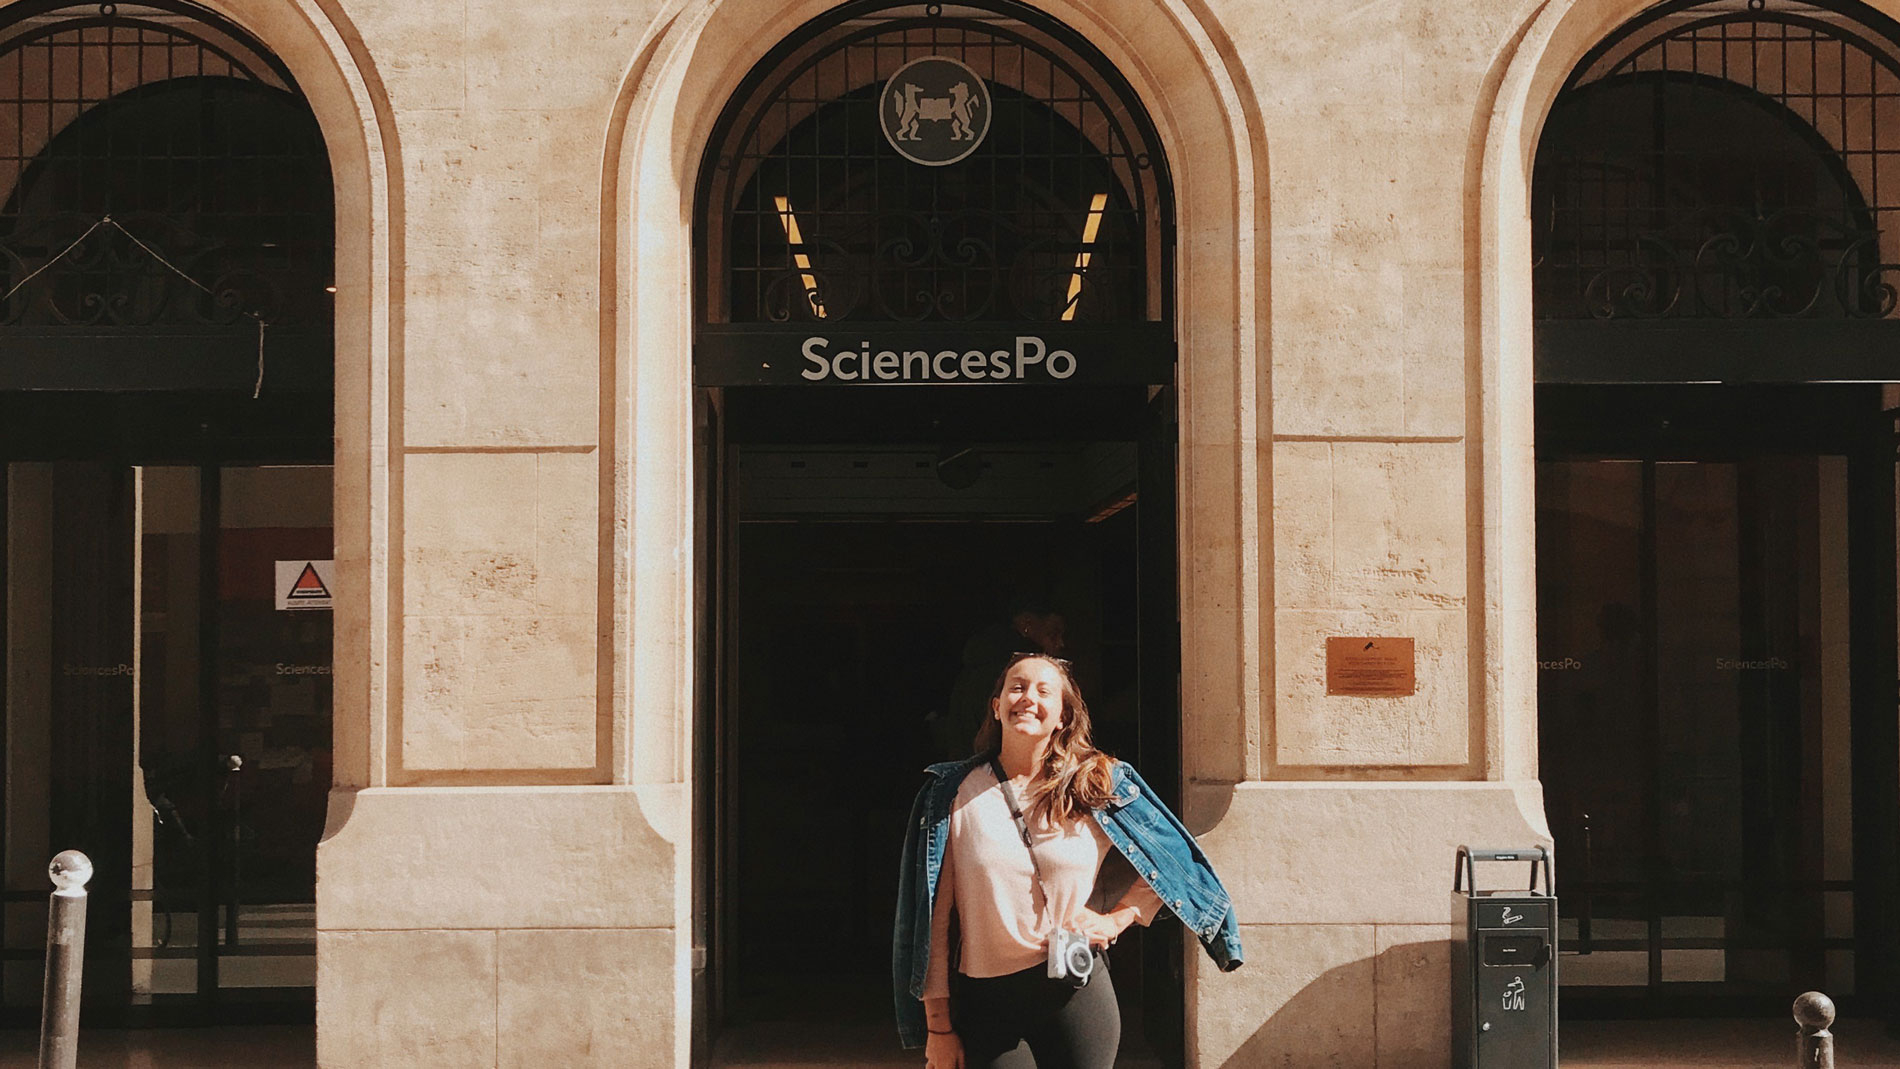 Audrey-Frédérique Lavoie in front of Sciences Po